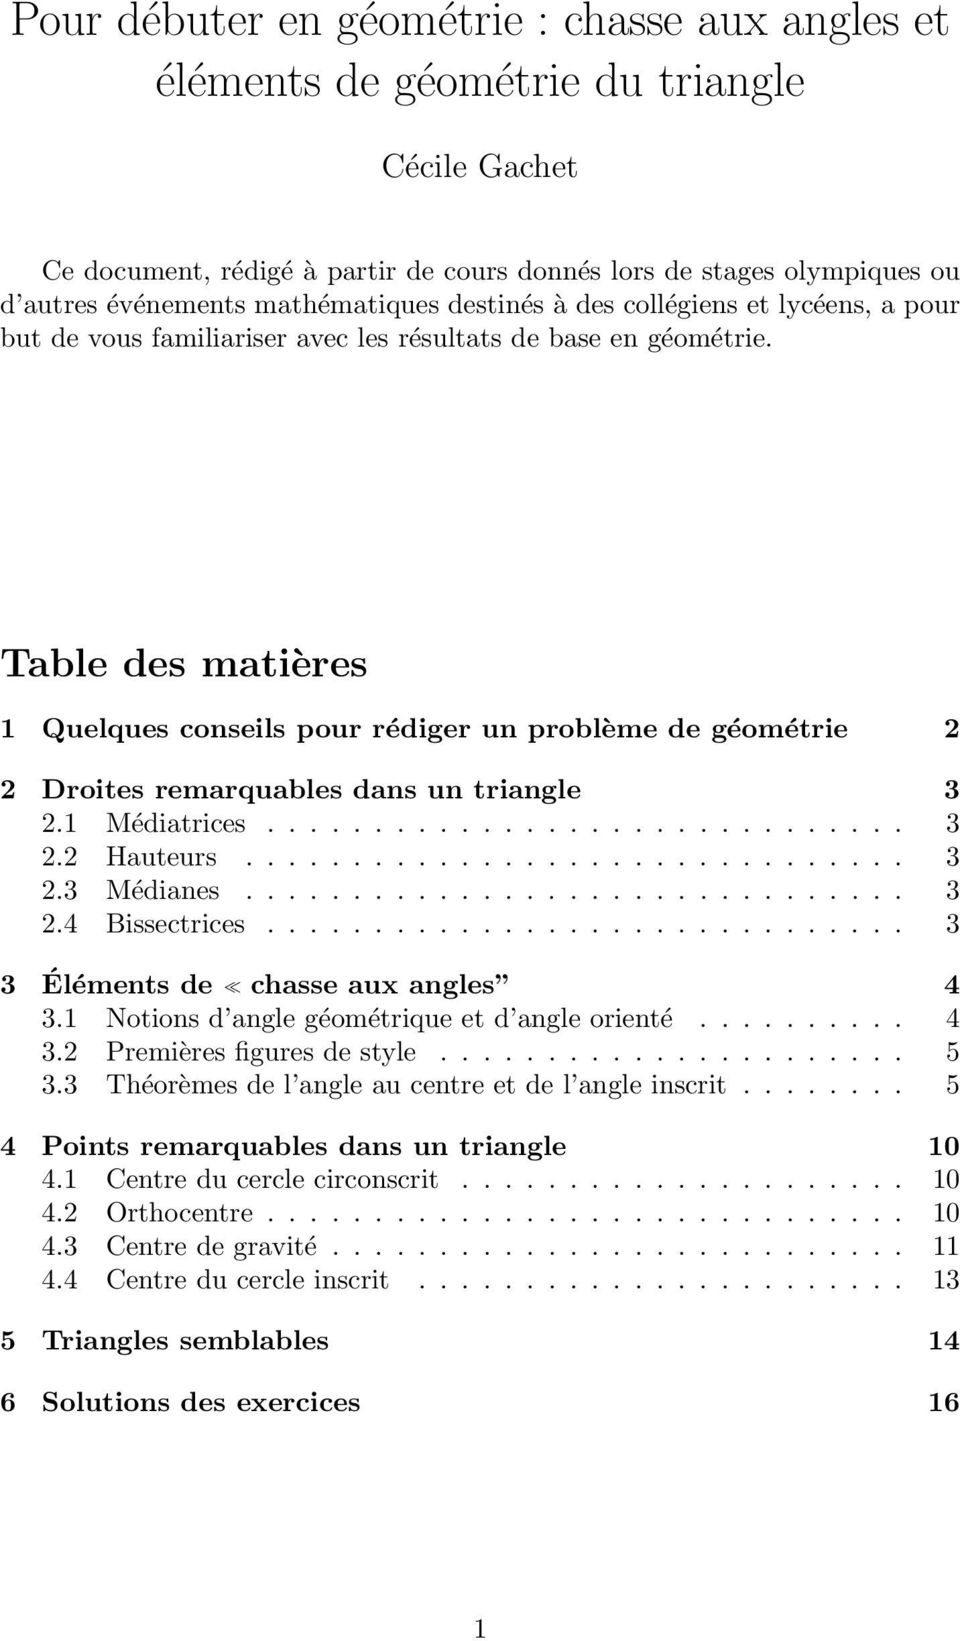 Table des matières 1 Quelques conseils pour rédiger un problème de géométrie 2 2 Droites remarquables dans un triangle 3 2.1 Médiatrices.............................. 3 2.2 Hauteurs............................... 3 2.3 Médianes.